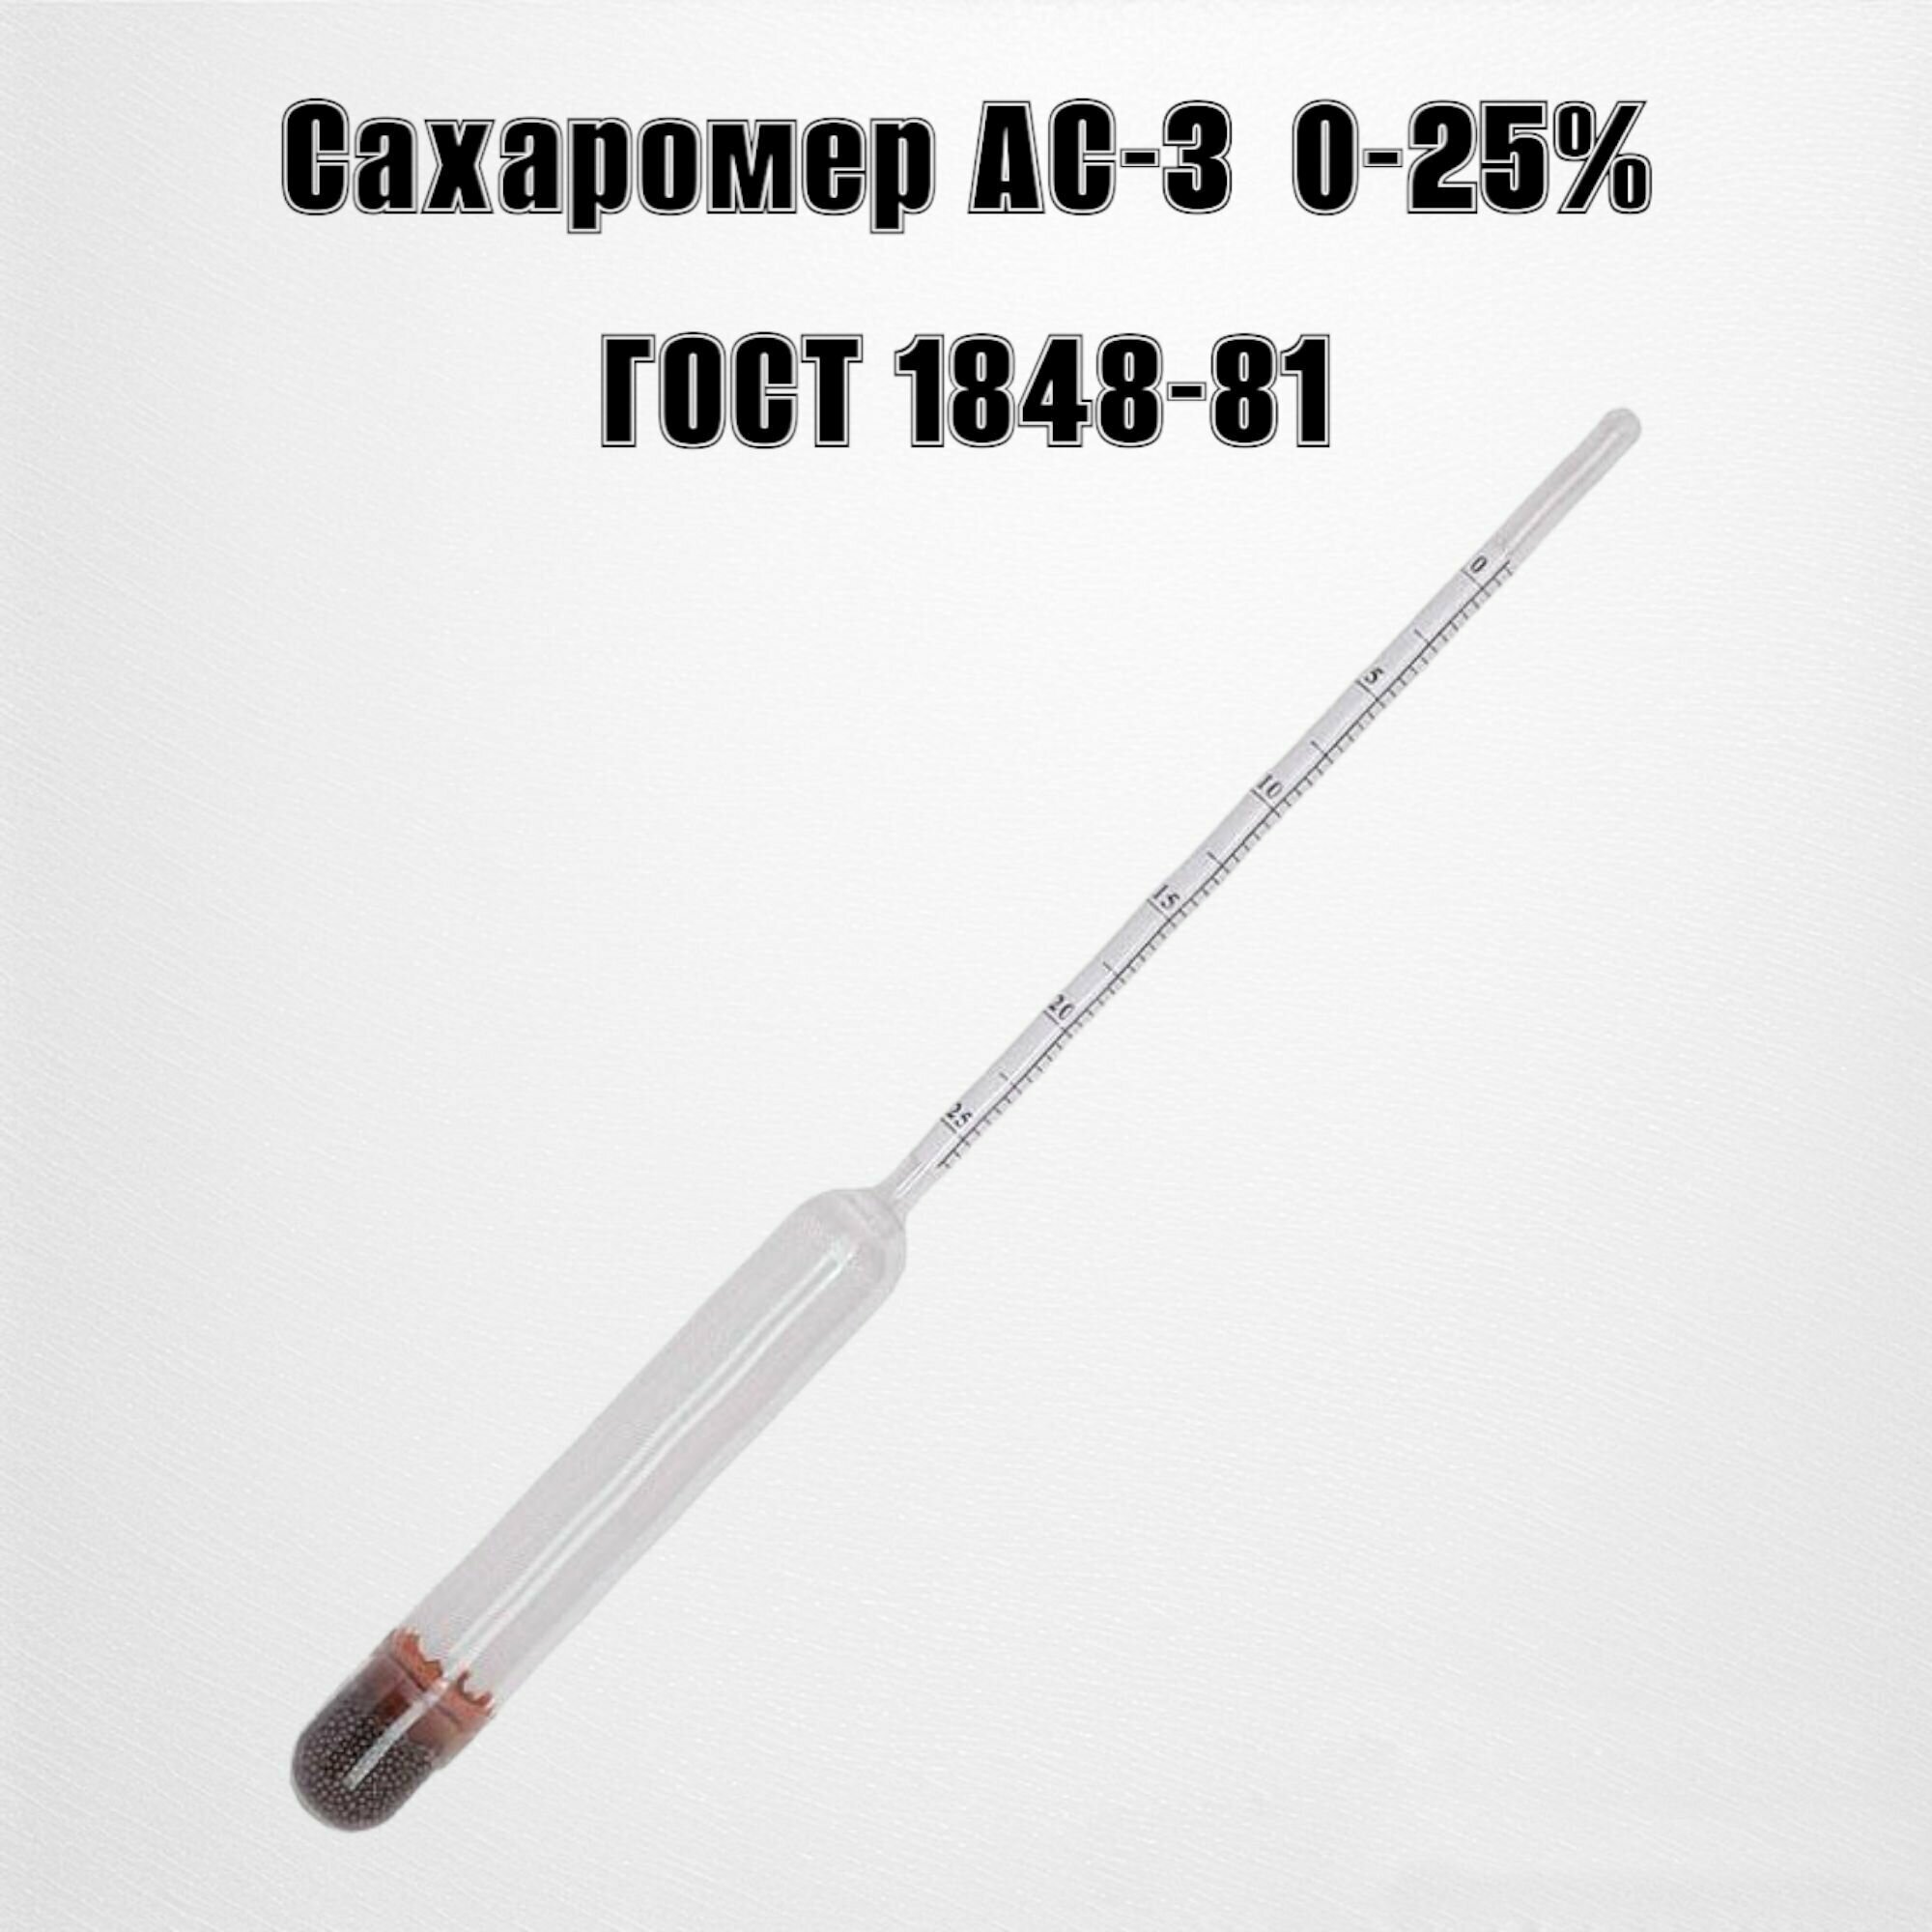 Ареометр сахаромер АС-3 0-25% гост 1848-81